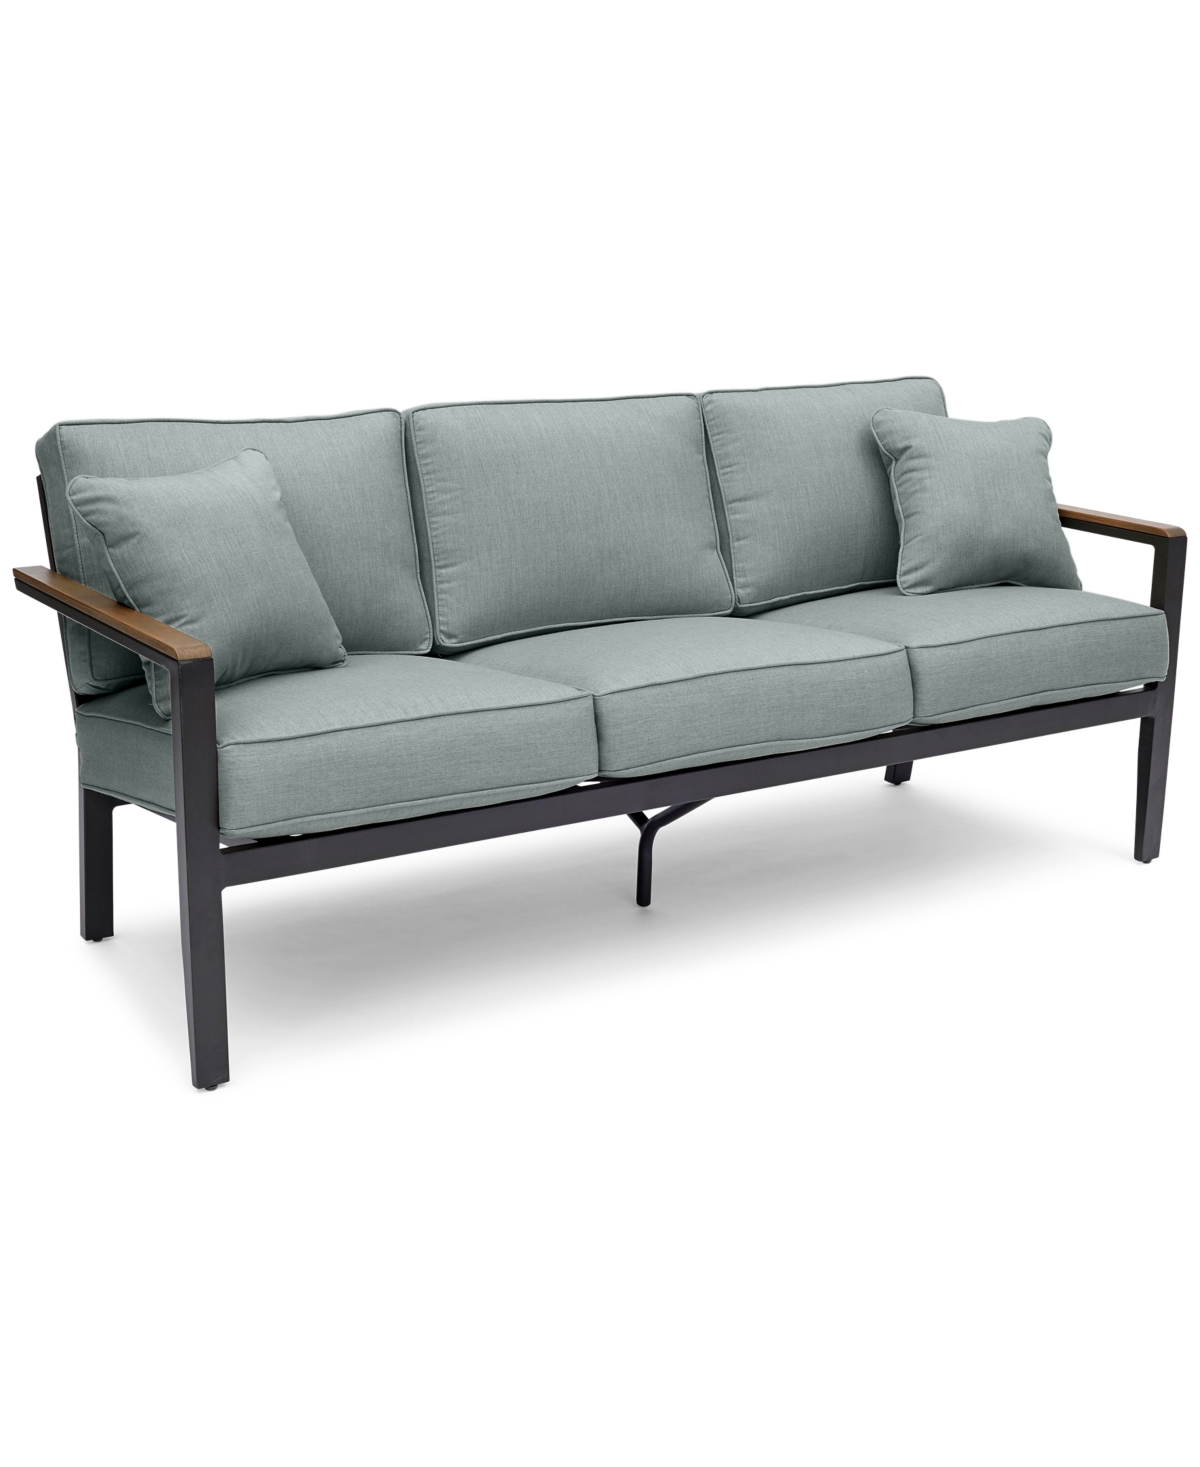 10404139 Stockholm Outdoor Sofa with Outdura Cushions, Crea sku 10404139